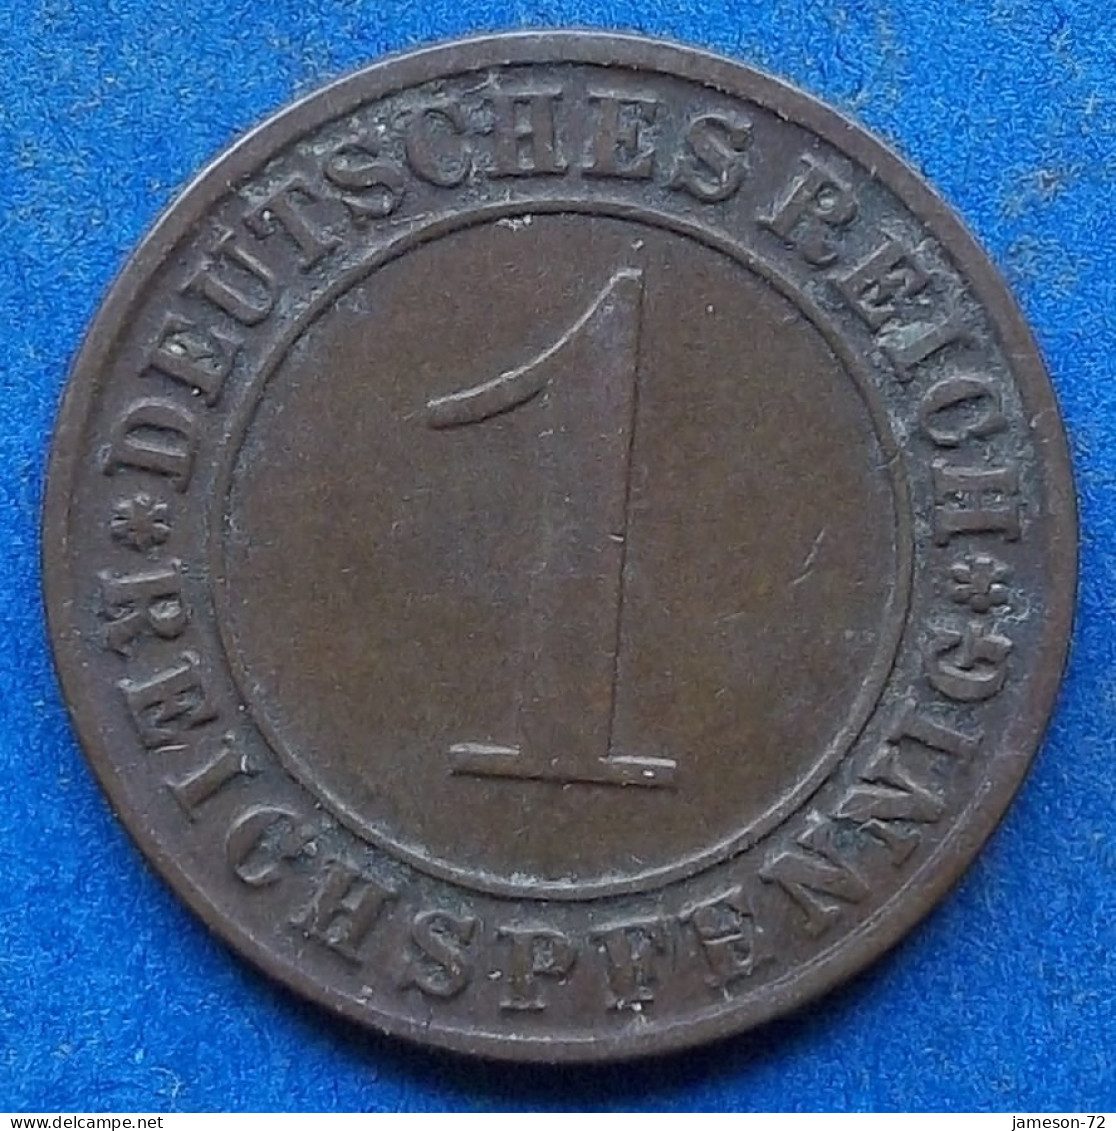 GERMANY - 1 Reichspfennig 1929 A KM# 37 Weimar Republic Reichsmark Coinage (1924-1938) - Edelweiss Coins - 1 Renten- & 1 Reichspfennig